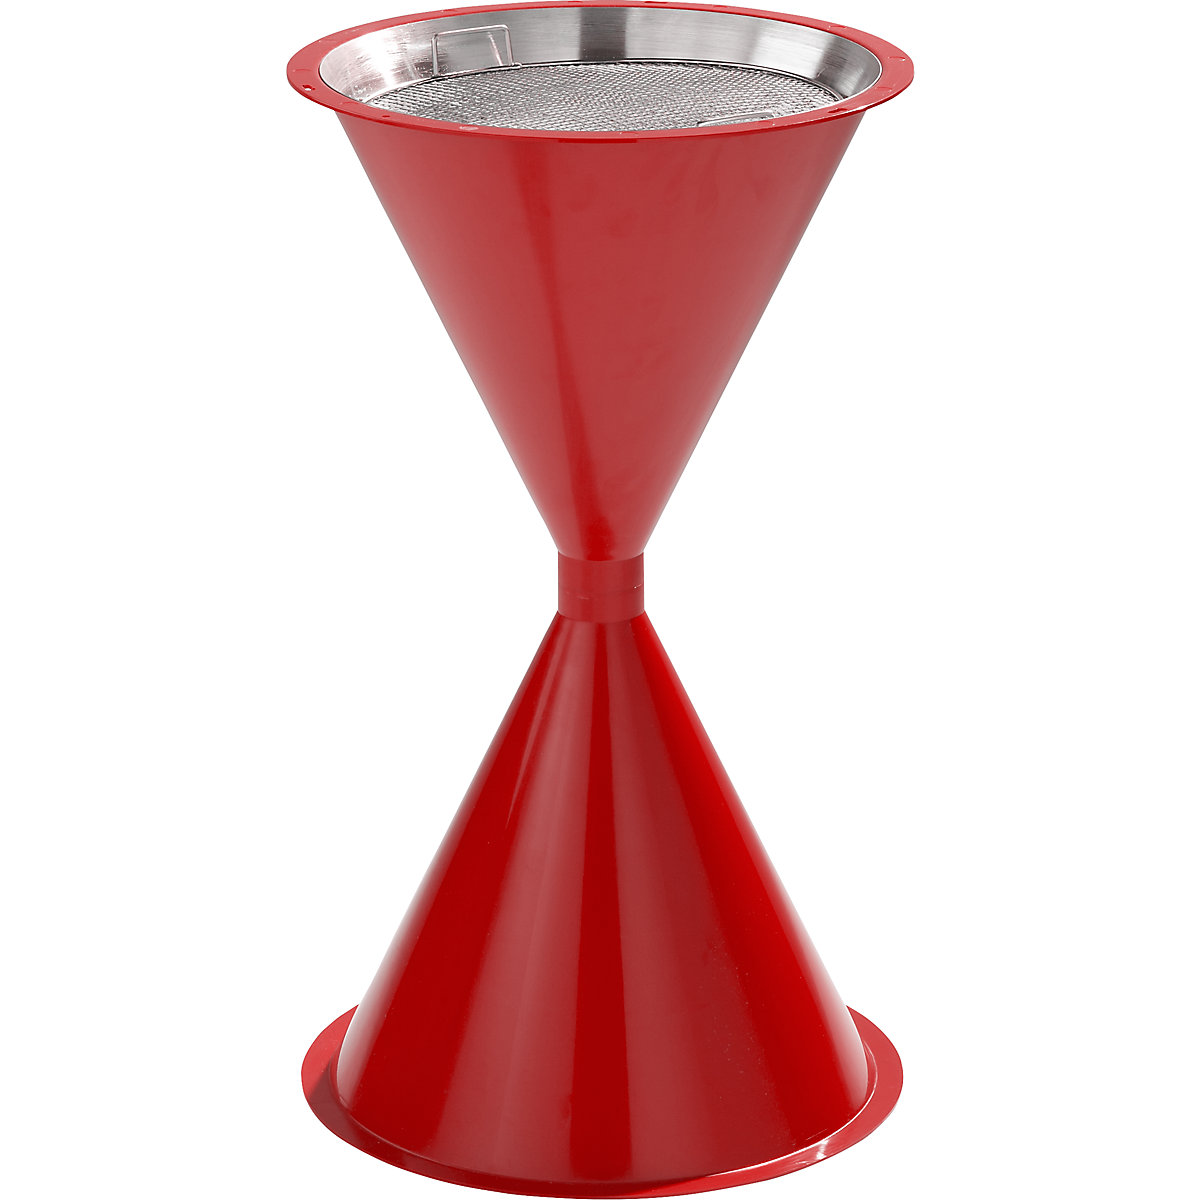 VAR – Kúp alakú álló hamutartó műanyagból, tető nélkül, közlekedési piros